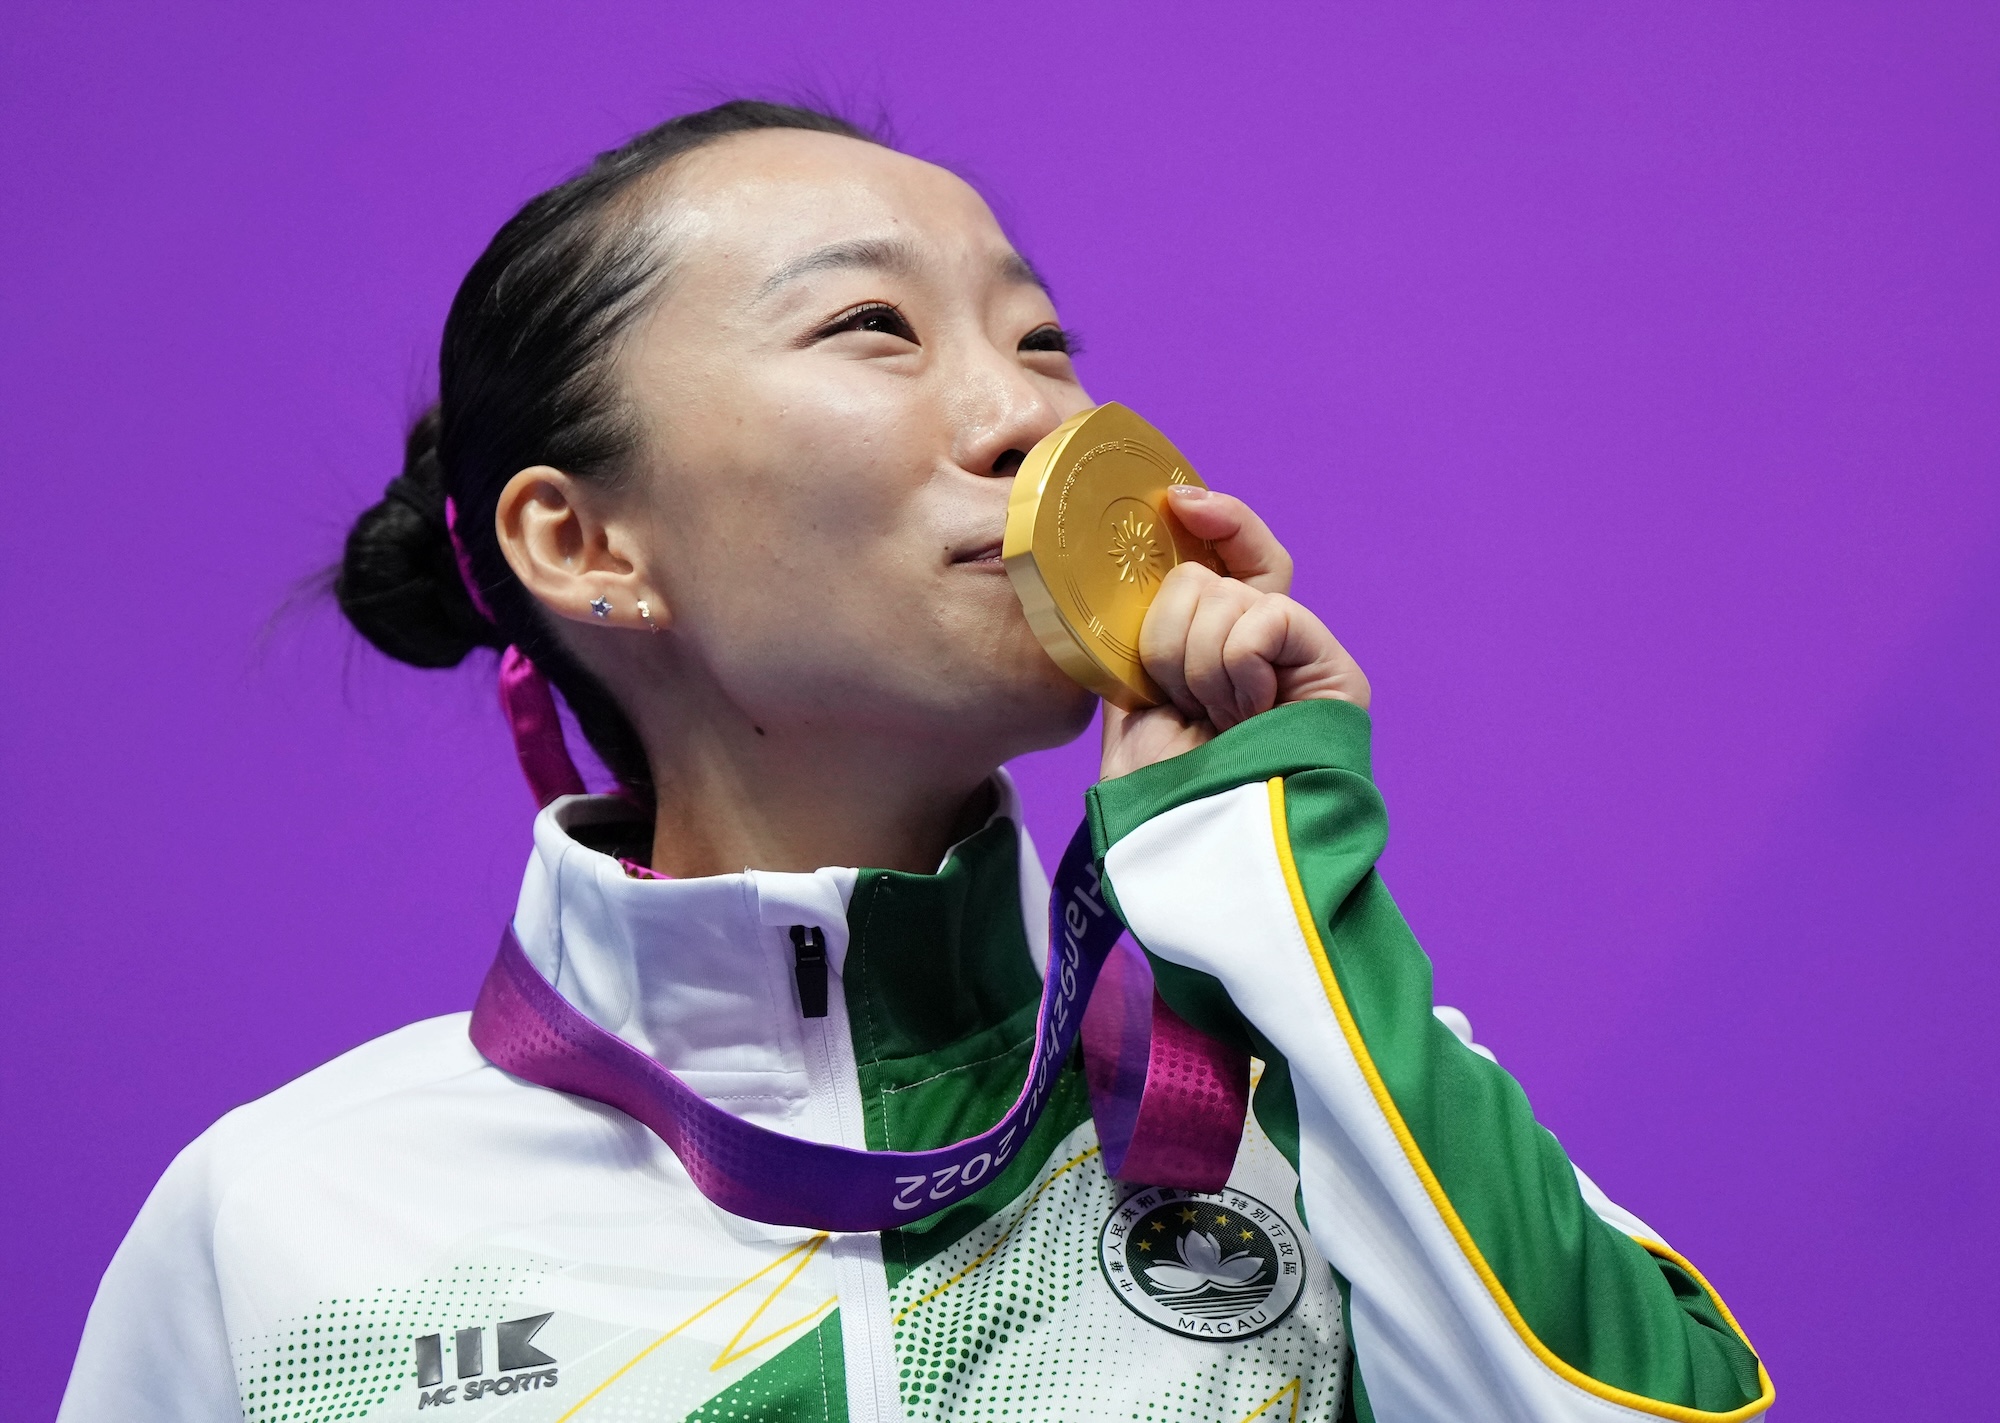 10 questions for Macao’s wushu gold medallist Li Yi